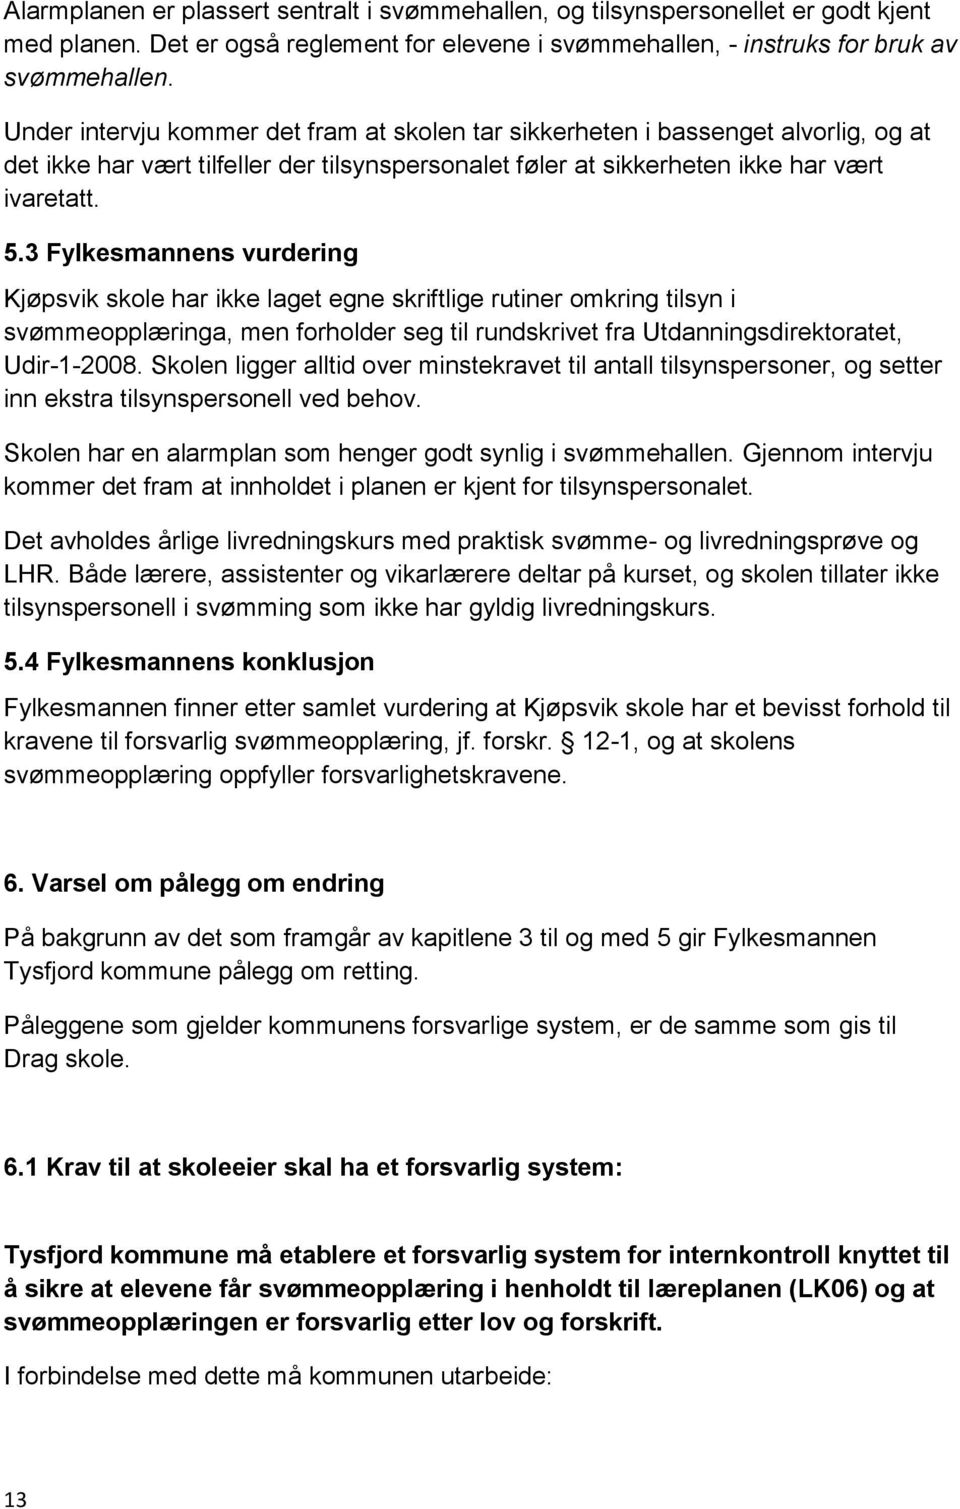 3 Fylkesmannens vurdering Kjøpsvik skole har ikke laget egne skriftlige rutiner omkring tilsyn i svømmeopplæringa, men forholder seg til rundskrivet fra Utdanningsdirektoratet, Udir-1-2008.